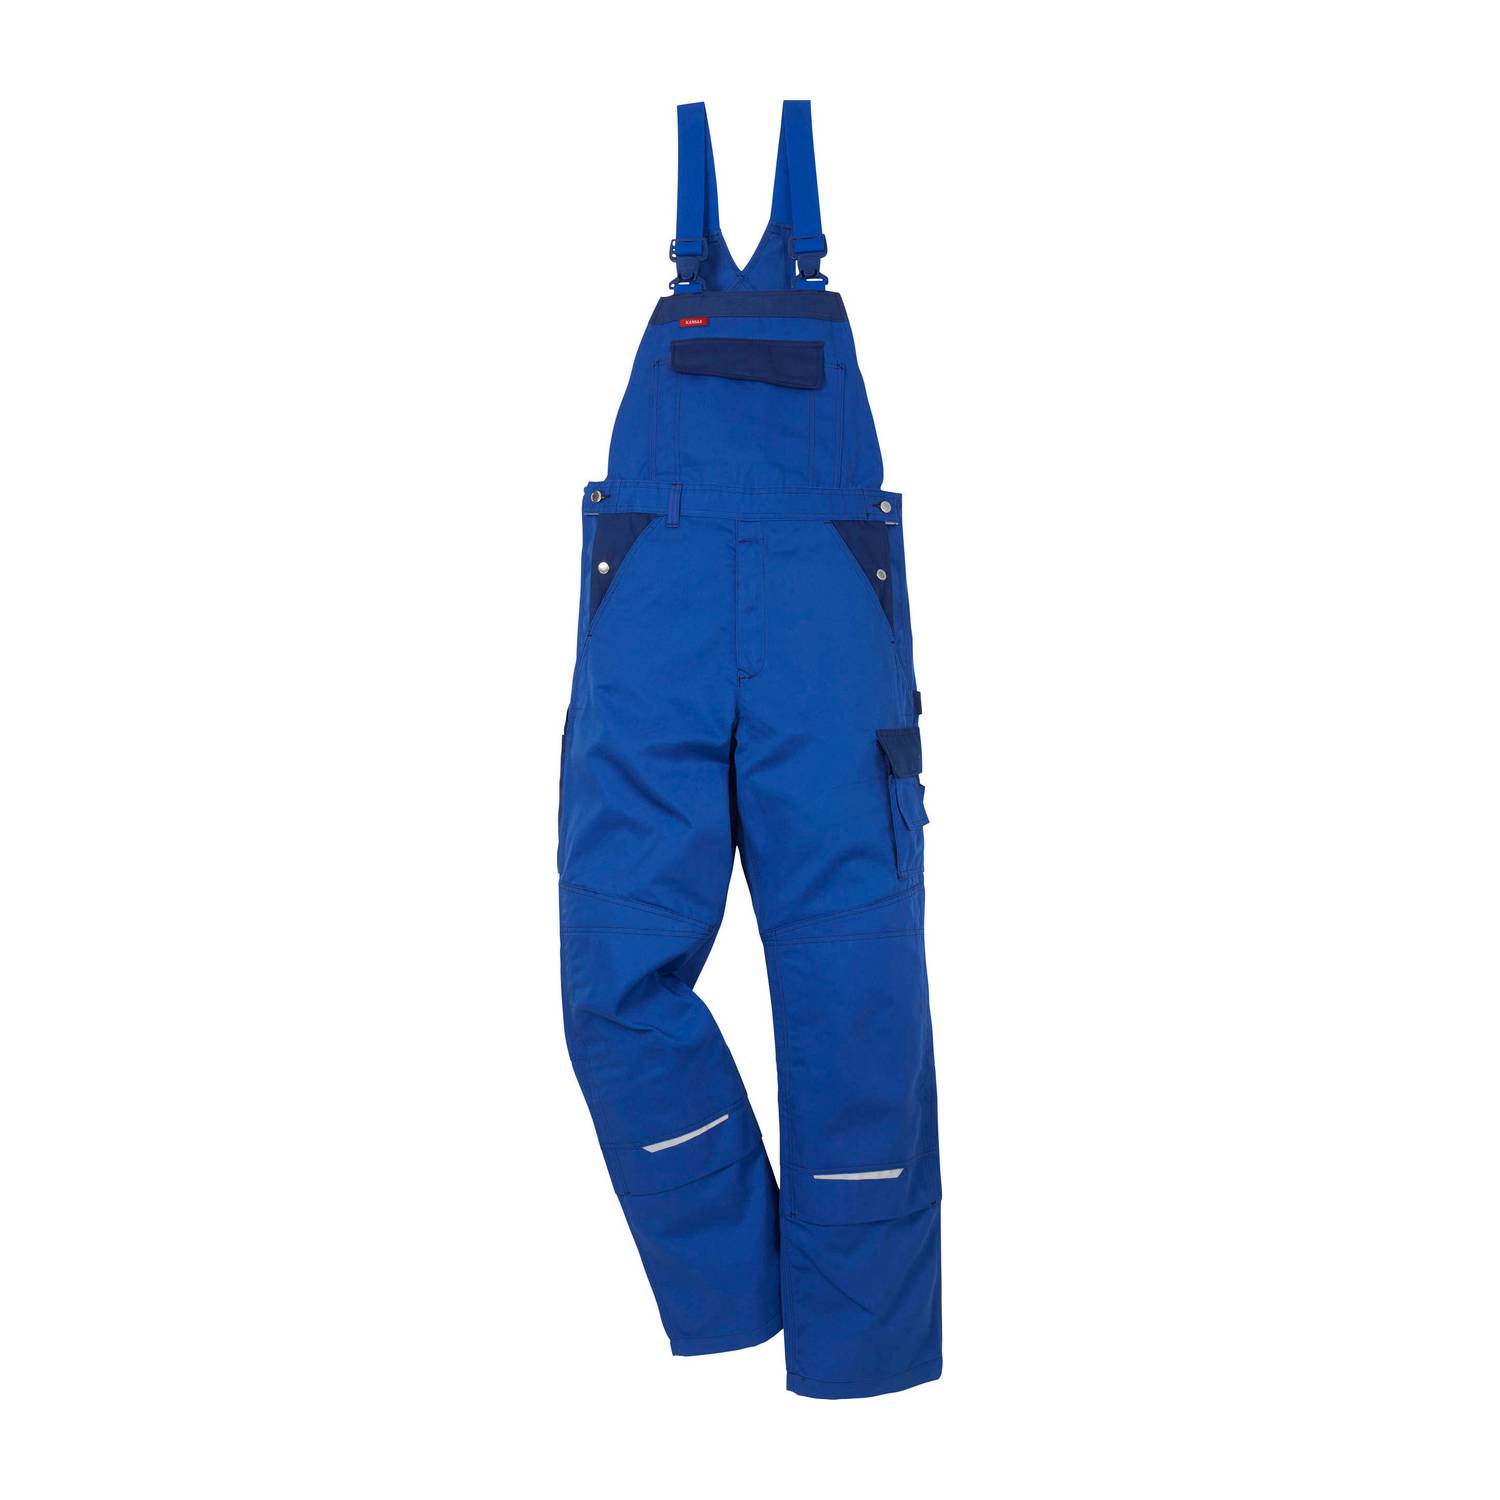 Fristads radne hlače s naramenicama 100806-676